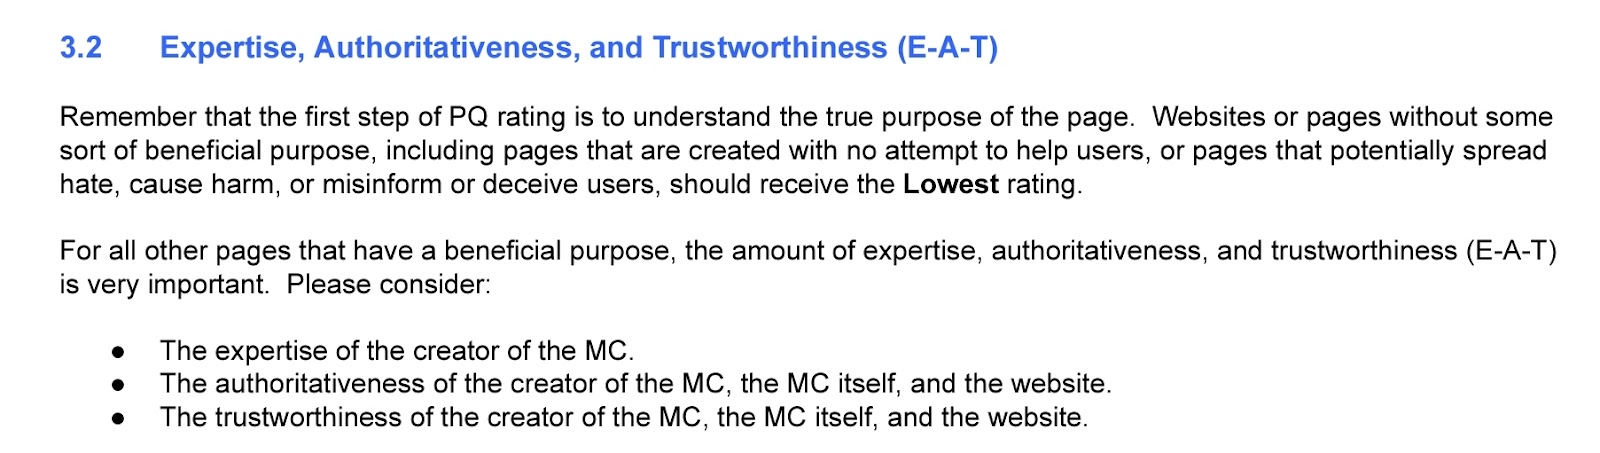 Expertise Authoritativeness and Trustworthiness